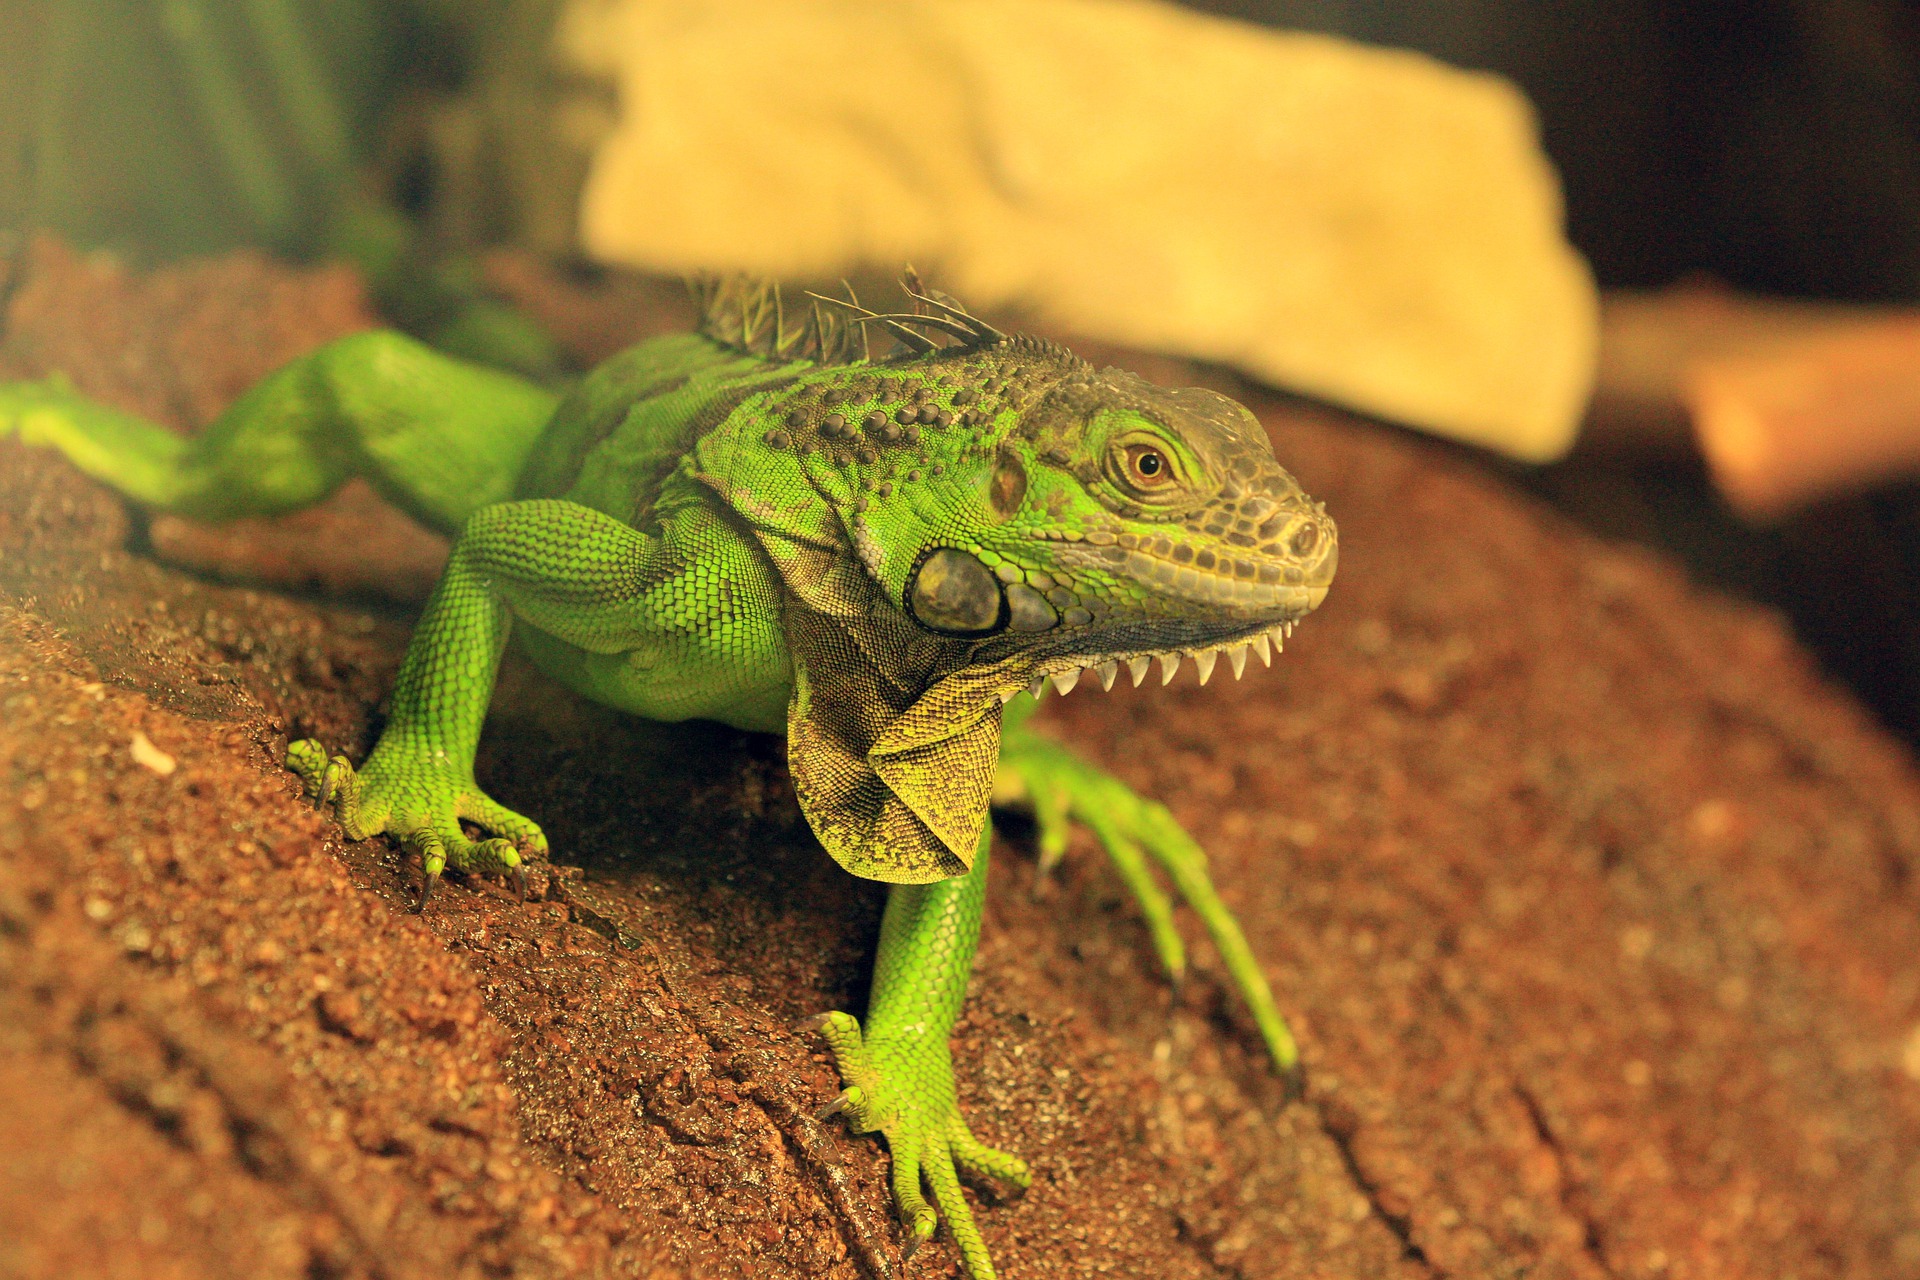 Suaugusi žalioji iguana gali būti iki 2 metrų ilgio. Jai reikia daug vietos, o jos priežiūra nėra pigi.